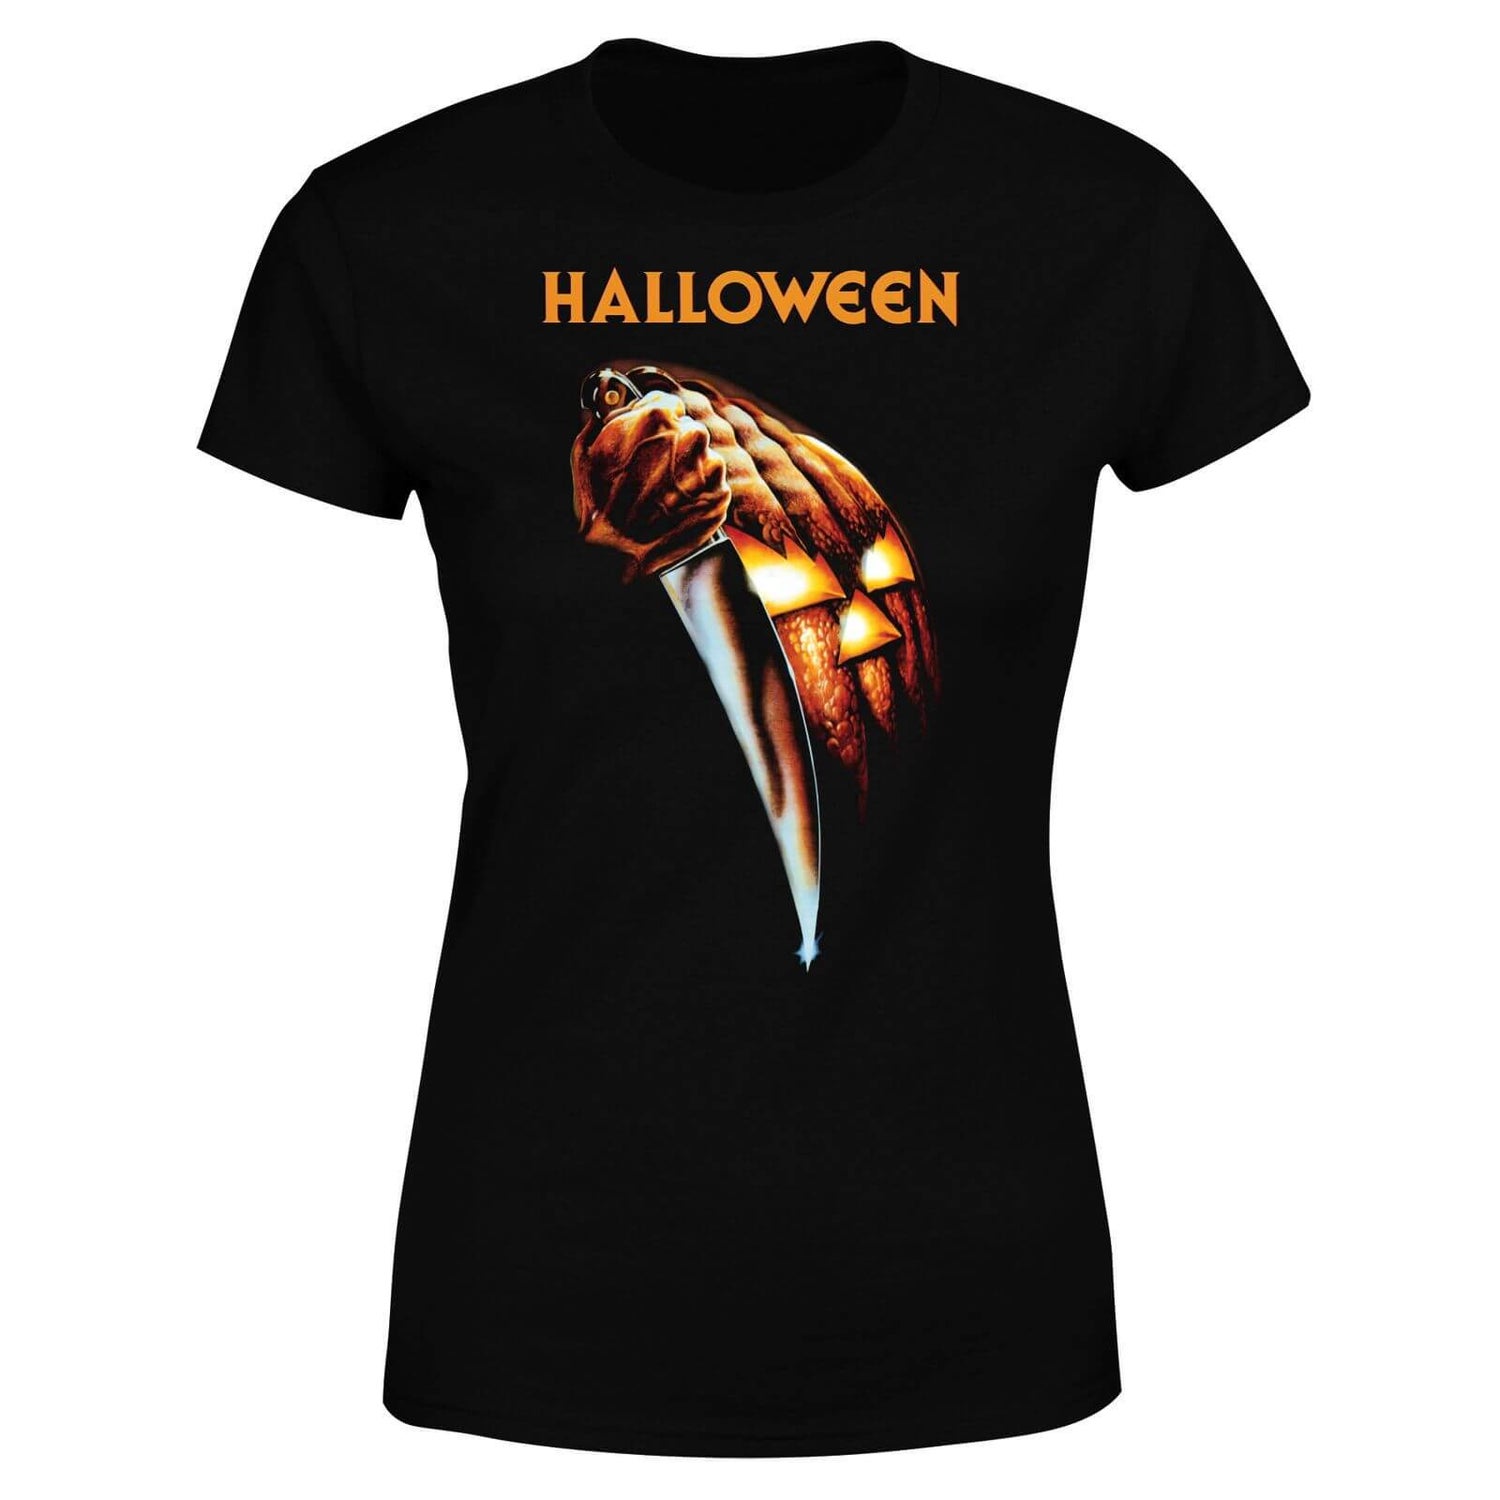 Halloween Pumpkin Women's T-Shirt - Black